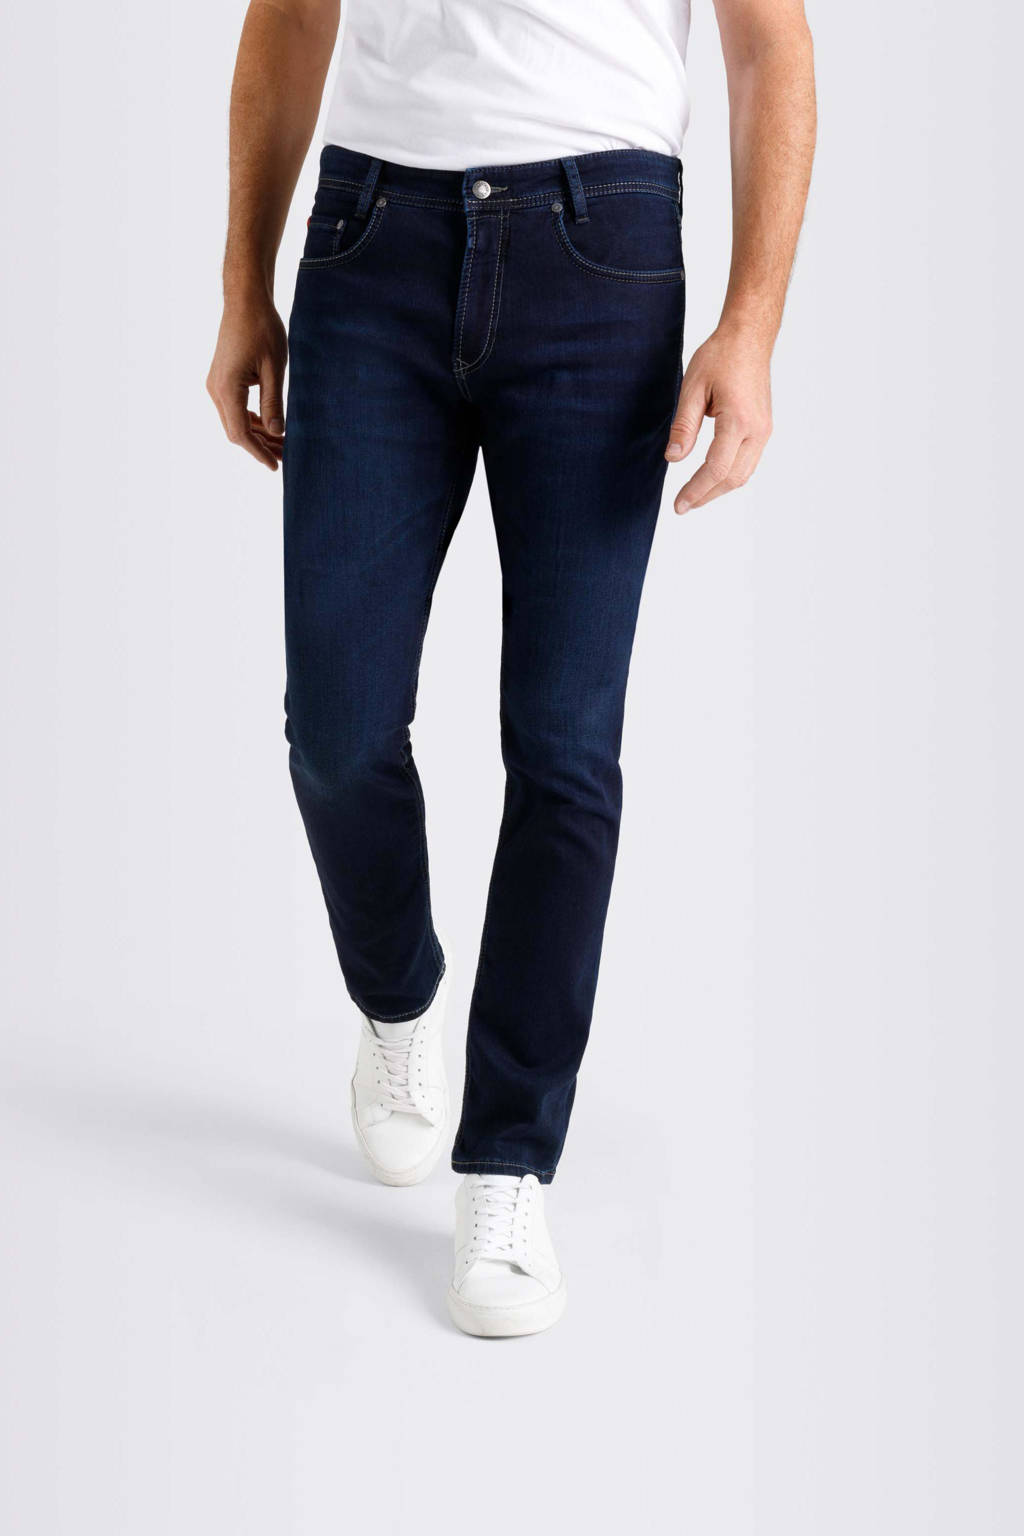 MAC regular fit jeans h743